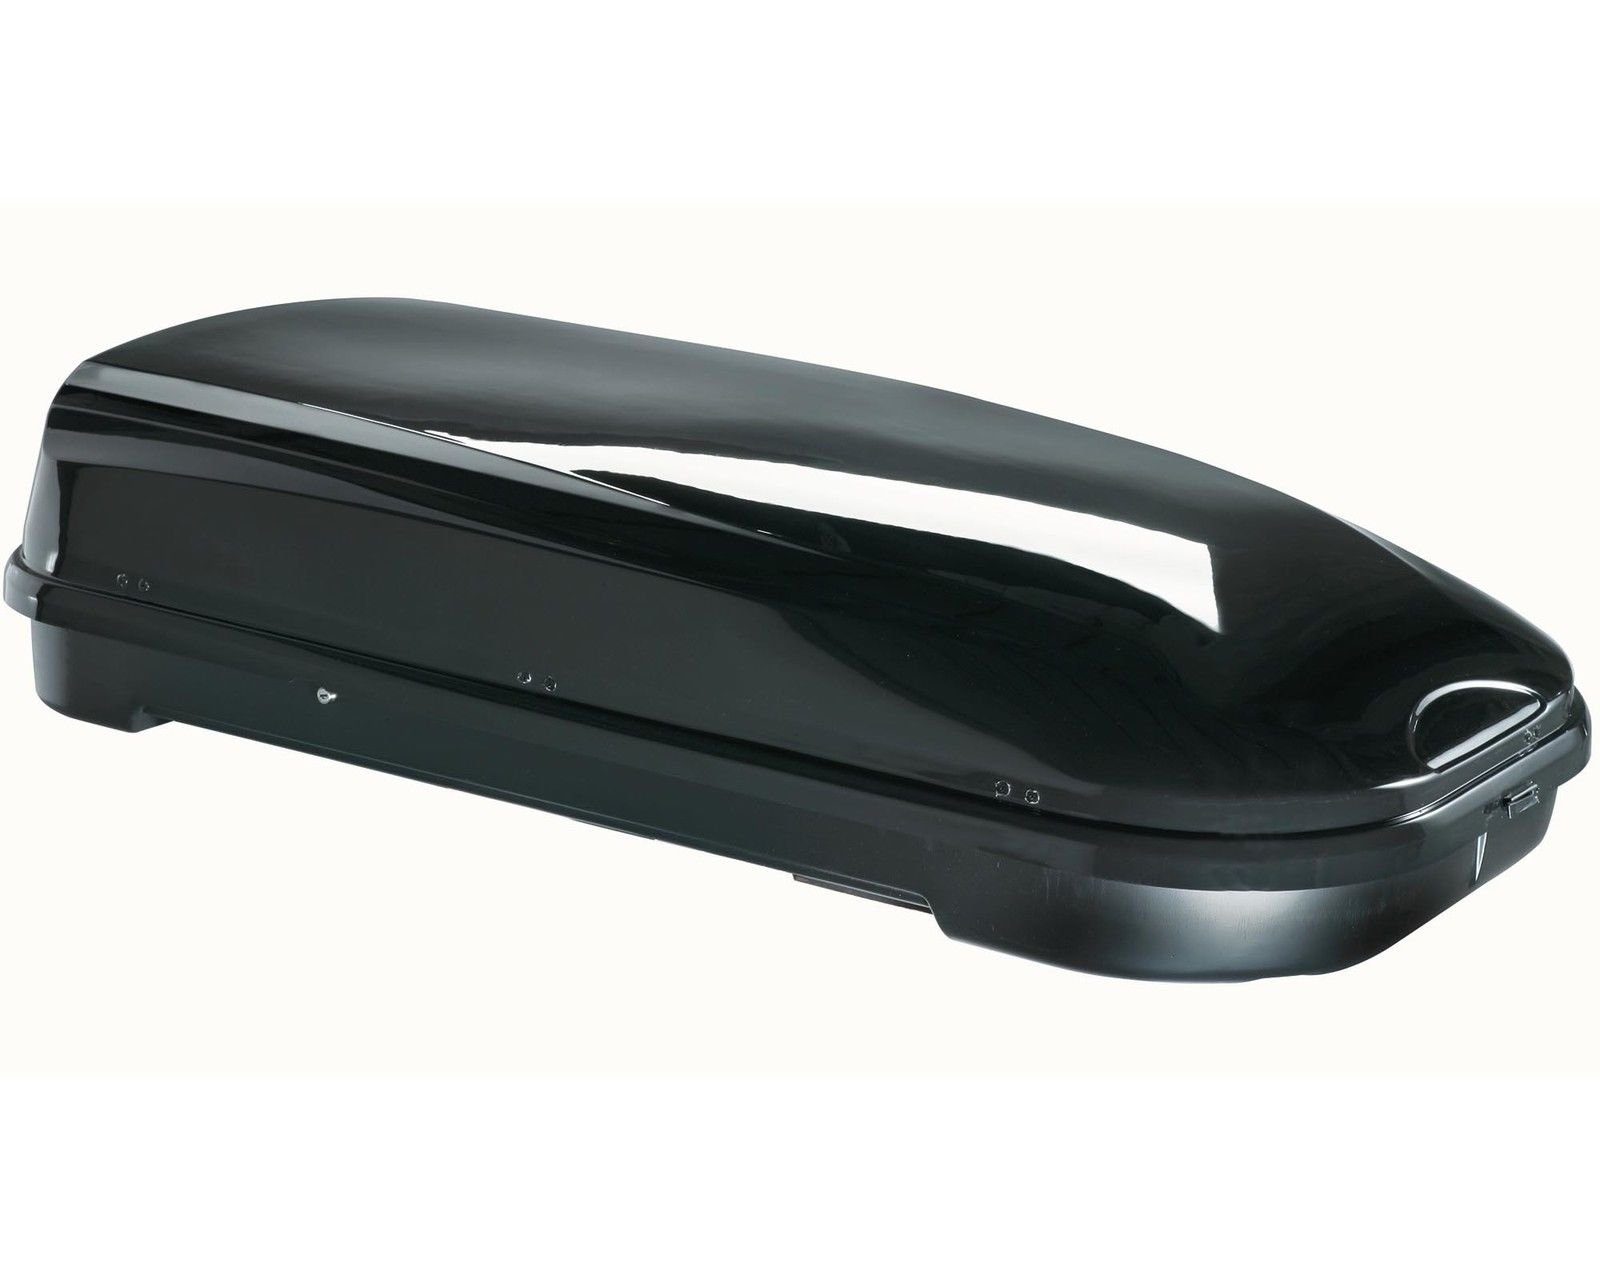 VDP Dachbox, (ALLES IN EINEM - Sparen Sie sich die Auswahl mehrerer Komponenten für Ihre perfekte Transportlösung - Mit dem Set aus Dachbox und Dachträger erhalten Sie ein leicht zu montierendes Komplettpaket mit allen Befestigungsteilen. Die glänzend-schwarze Box überzeugt mit ihrem edlen Design und viel Platz), Dachbox VDP-FL580 Relingträger Alu kompatibel mit BMW X3 E83 04-10 abschließbar | Dachboxen